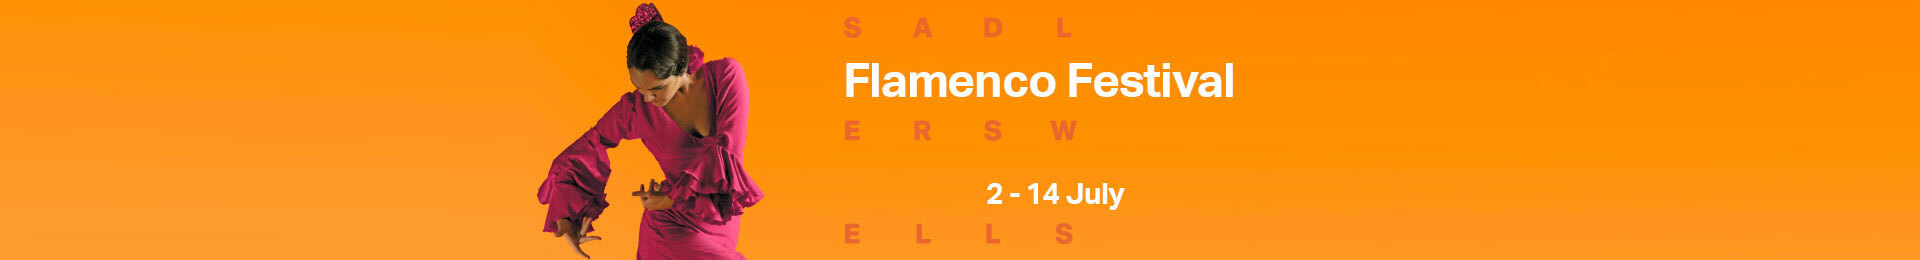 Flamenco Festival: Patricia Guerrero banner image